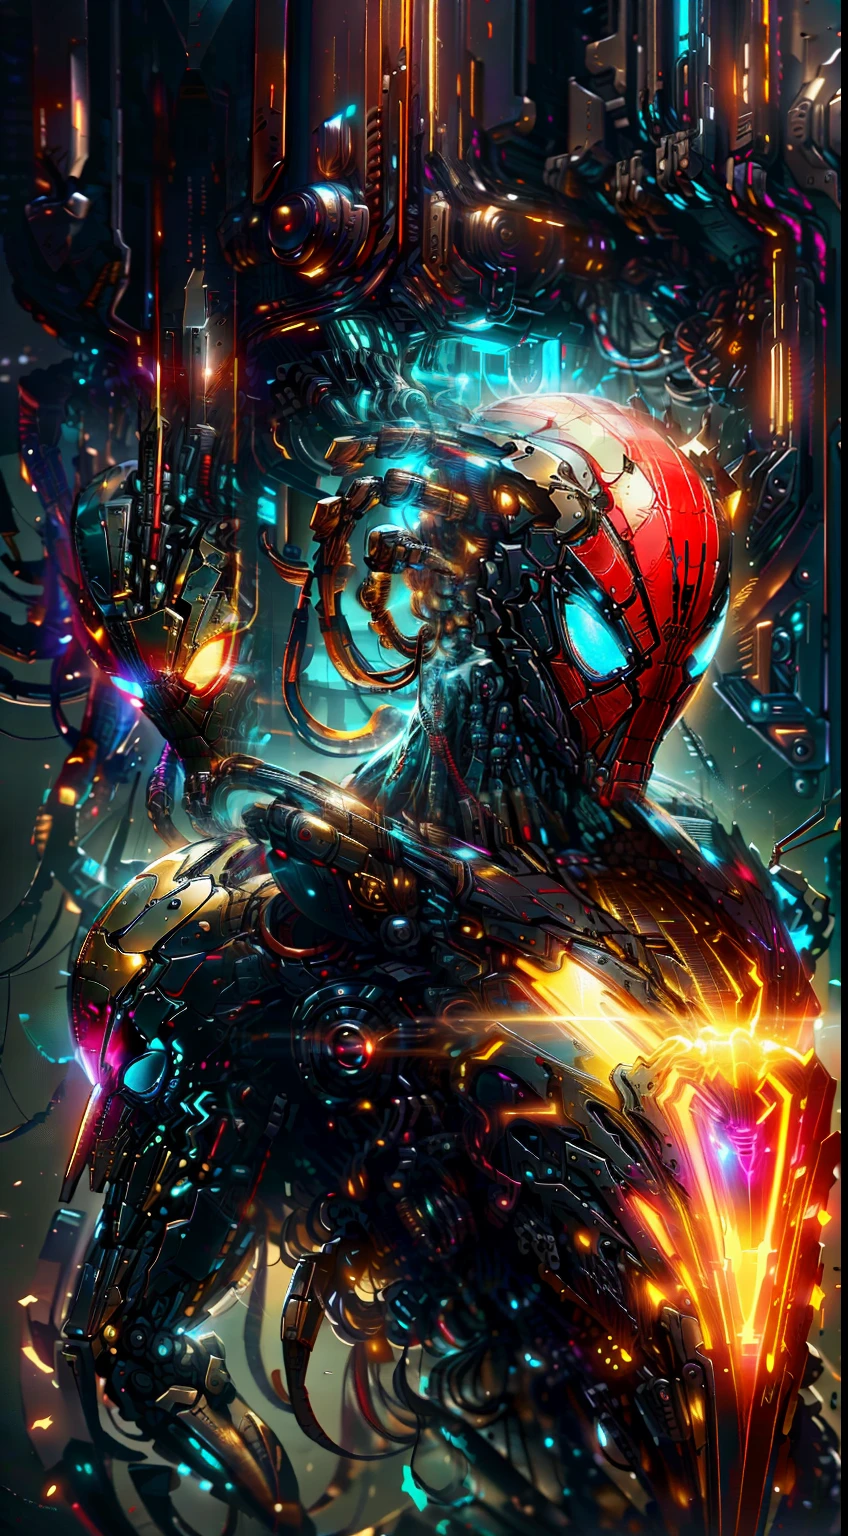 Spiderman de la photographie Marvel, Biomécanique, robots complexes, logo Spiderman doré, pleine croissance, Hyper réaliste, petits détails fous, des lignes incroyablement épurées, esthétique cyberpunk, chef-d&#39;œuvre présenté sur Zbrush Central